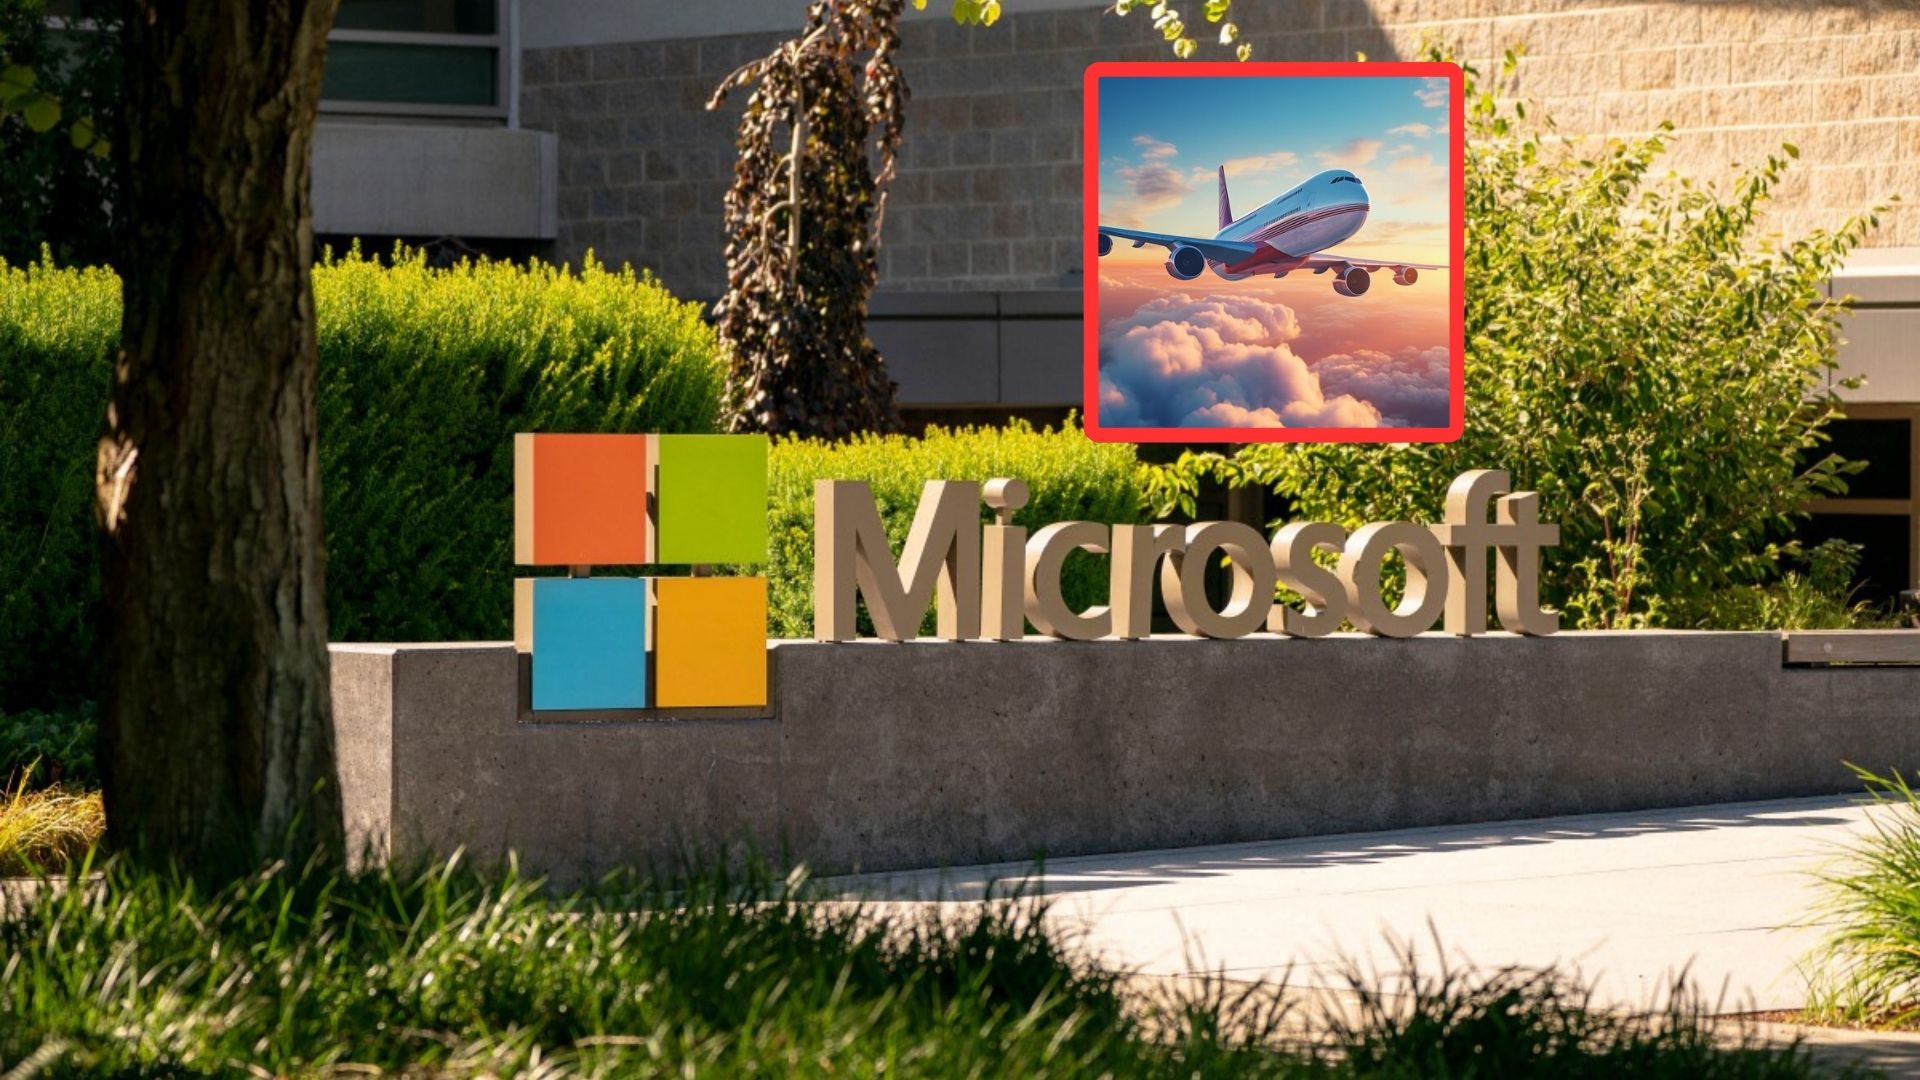 Falla Microsoft: ¿por qué se se cayó y a qué dedica? Problema en nube tiene que ver